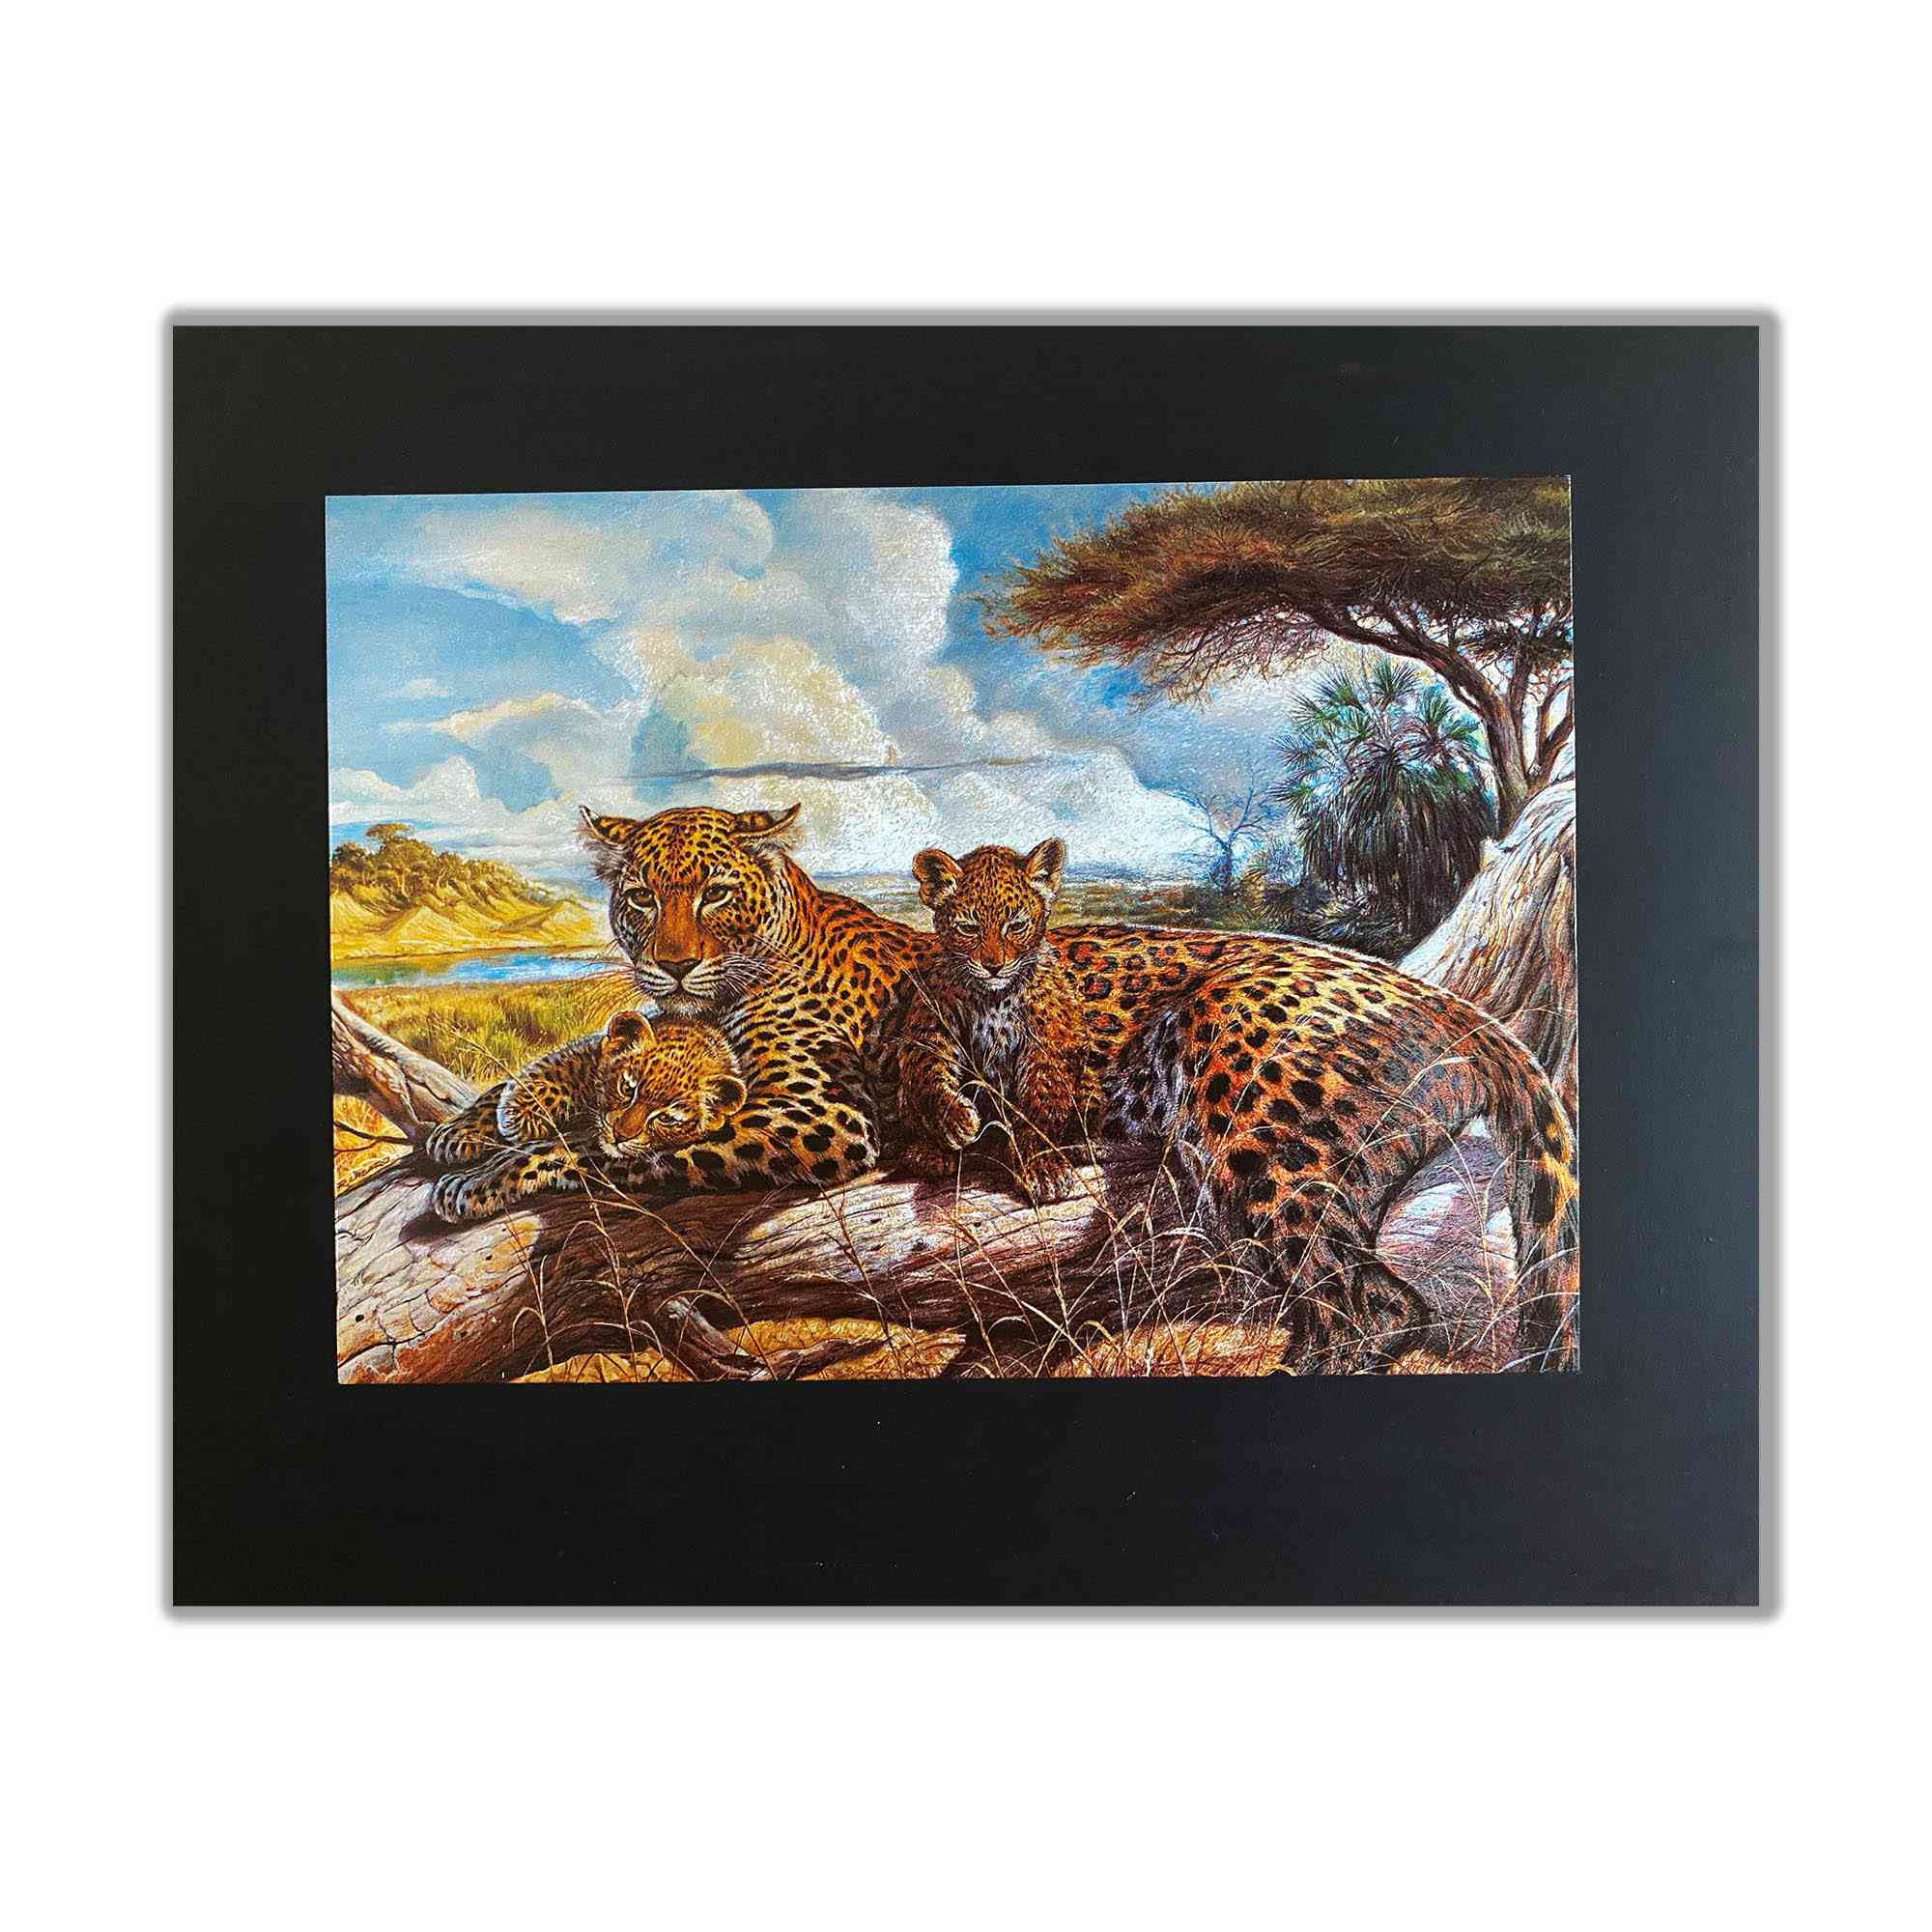 Obitelj tigrova u gravuri gravure savane - folija